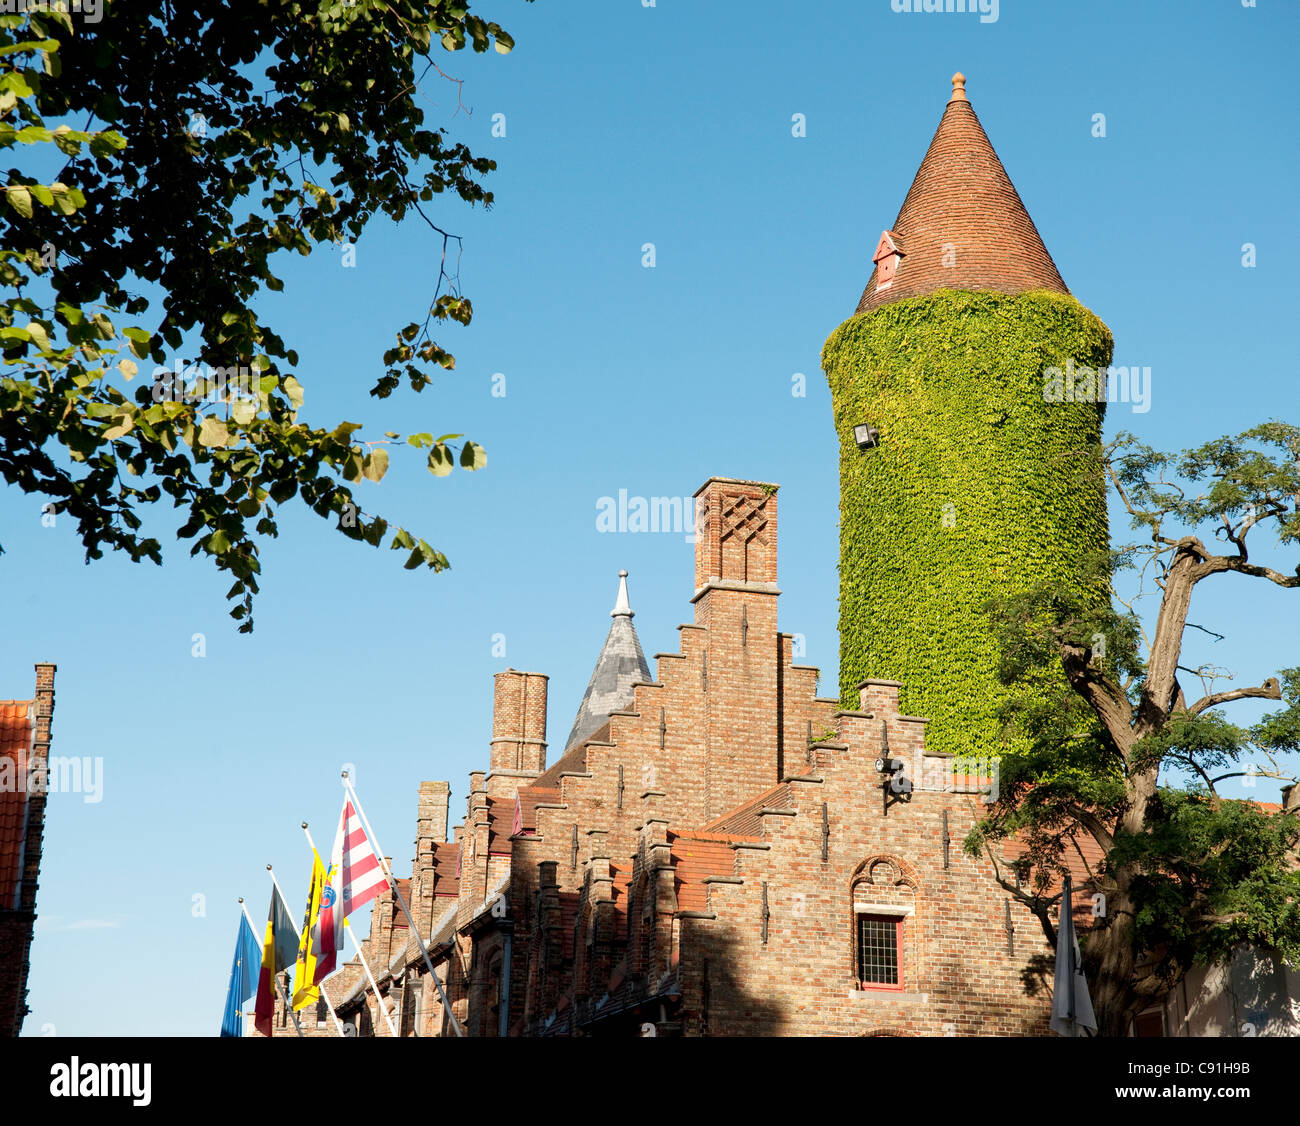 Le musée Gruuthuse dans le centre de la vieille ville Bruges Belgique est célèbre pour est recouvert de lierre et la tour gothique en grève Banque D'Images